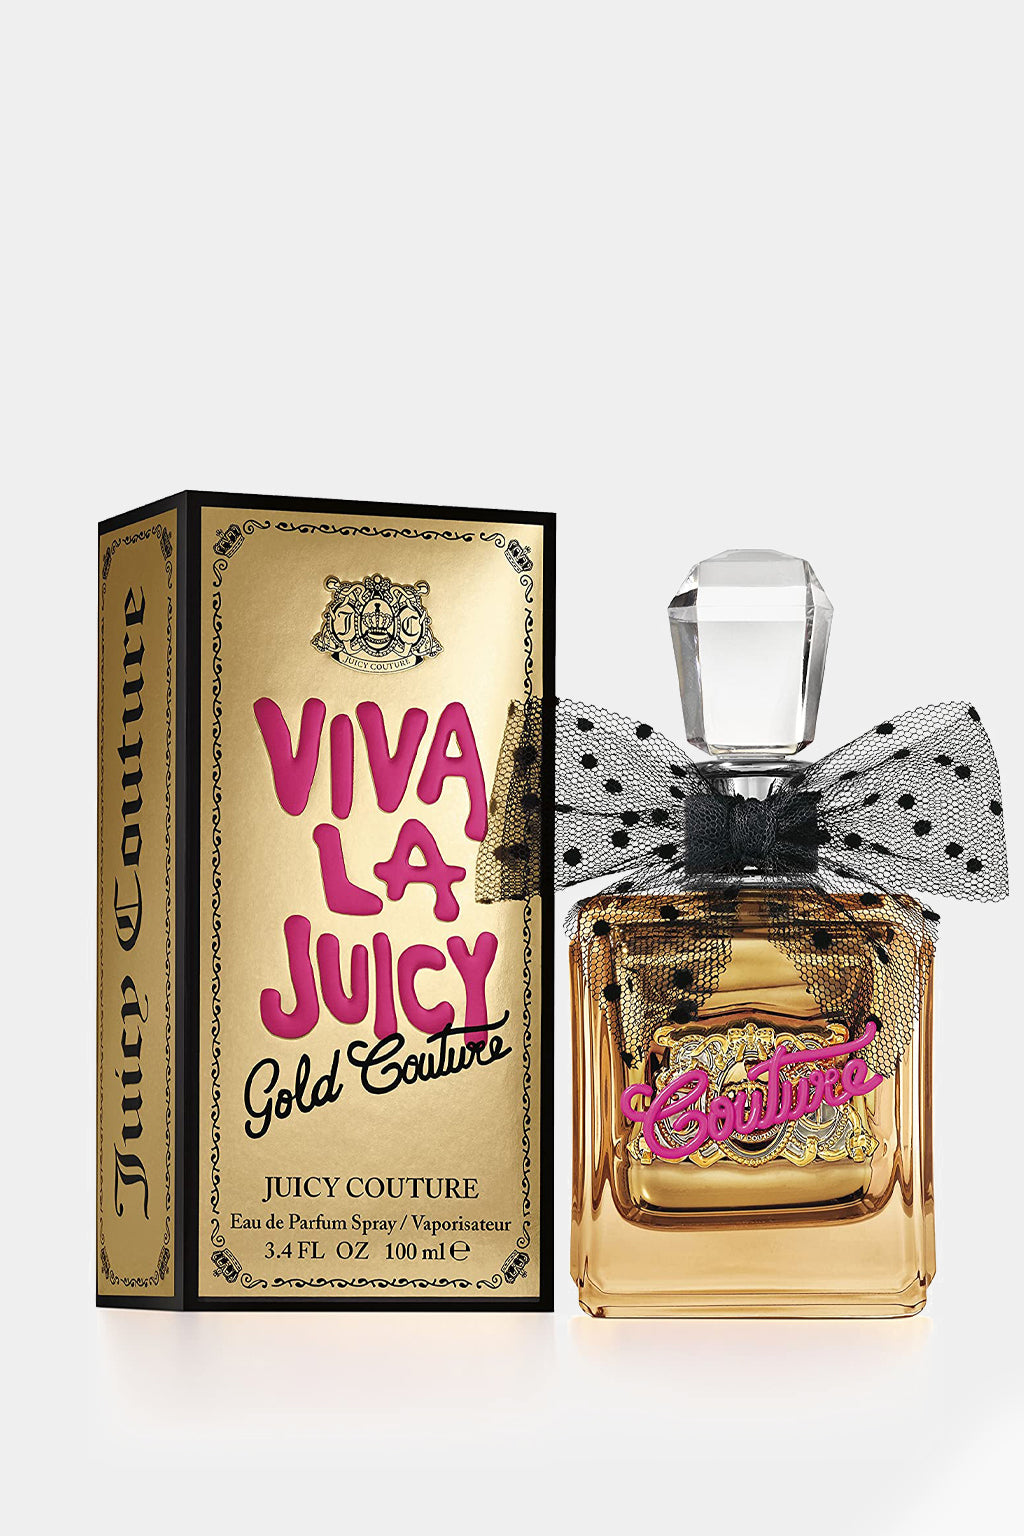 Juicy Couture - Viva La Juicy Gold Couture Eau de Parfum